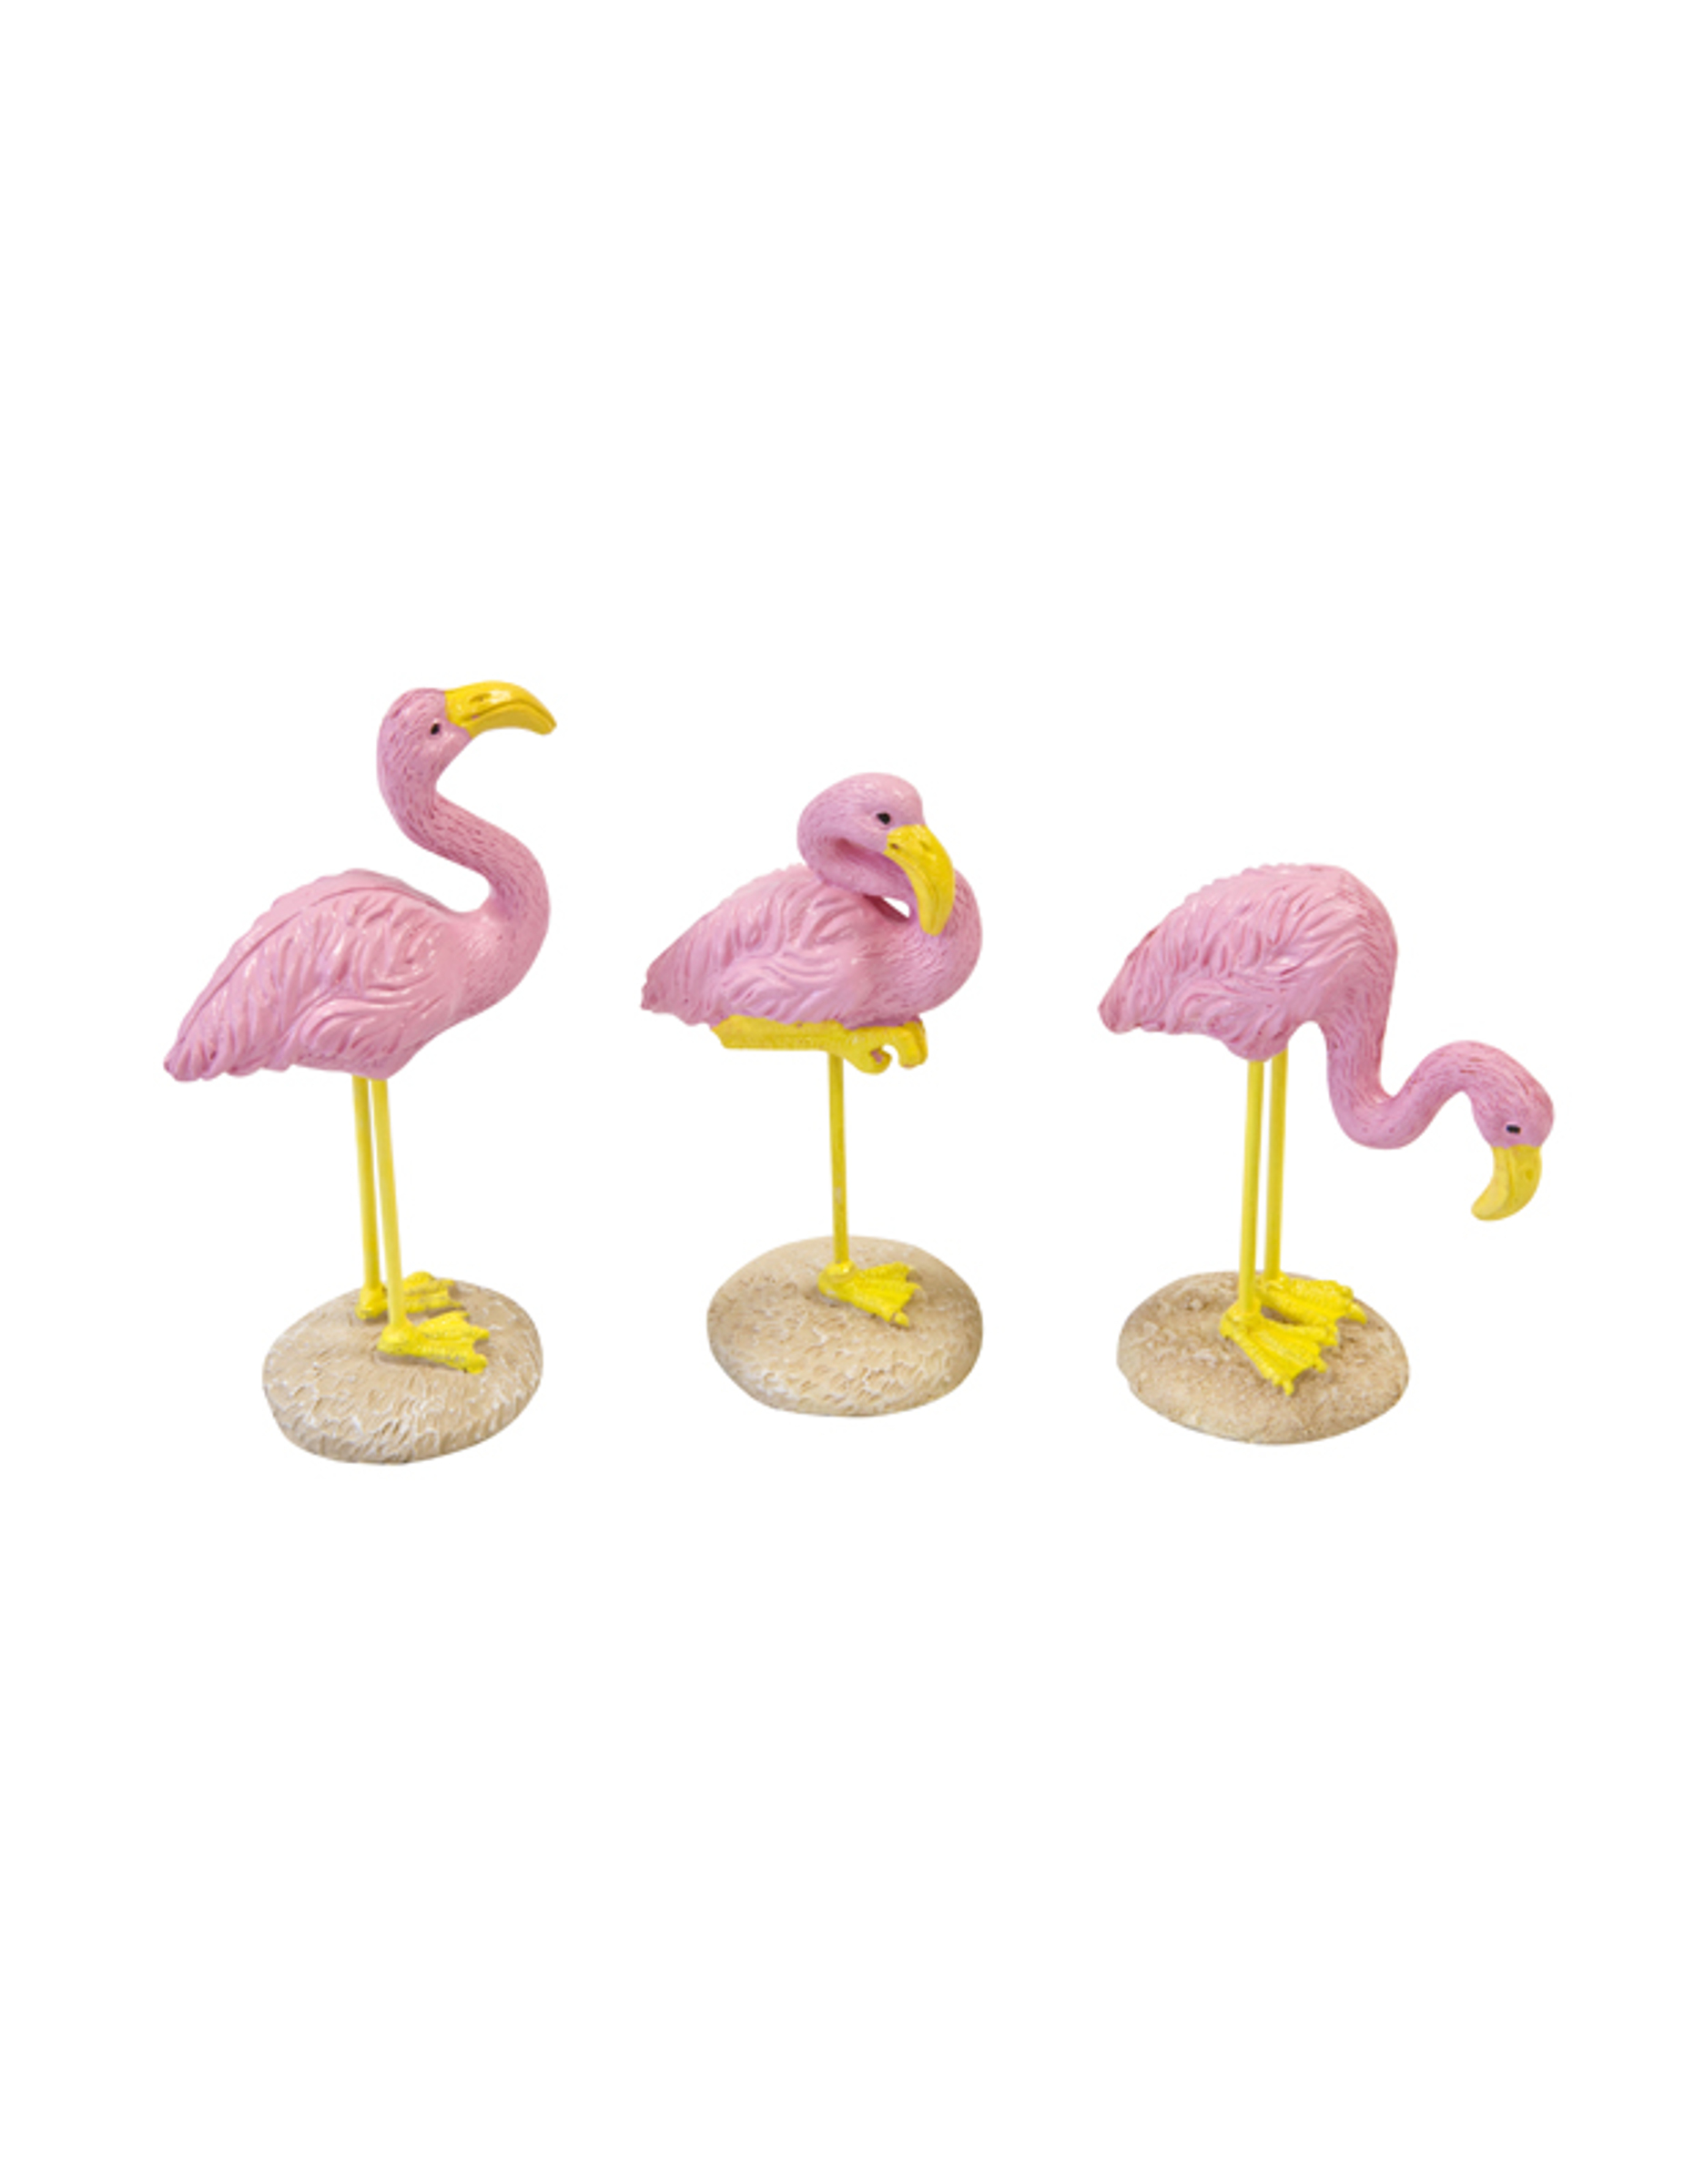 Flamingo-Figur aus Kunstharz 1 Stück pink-gelb 3,5 x 10 cm von HOBI